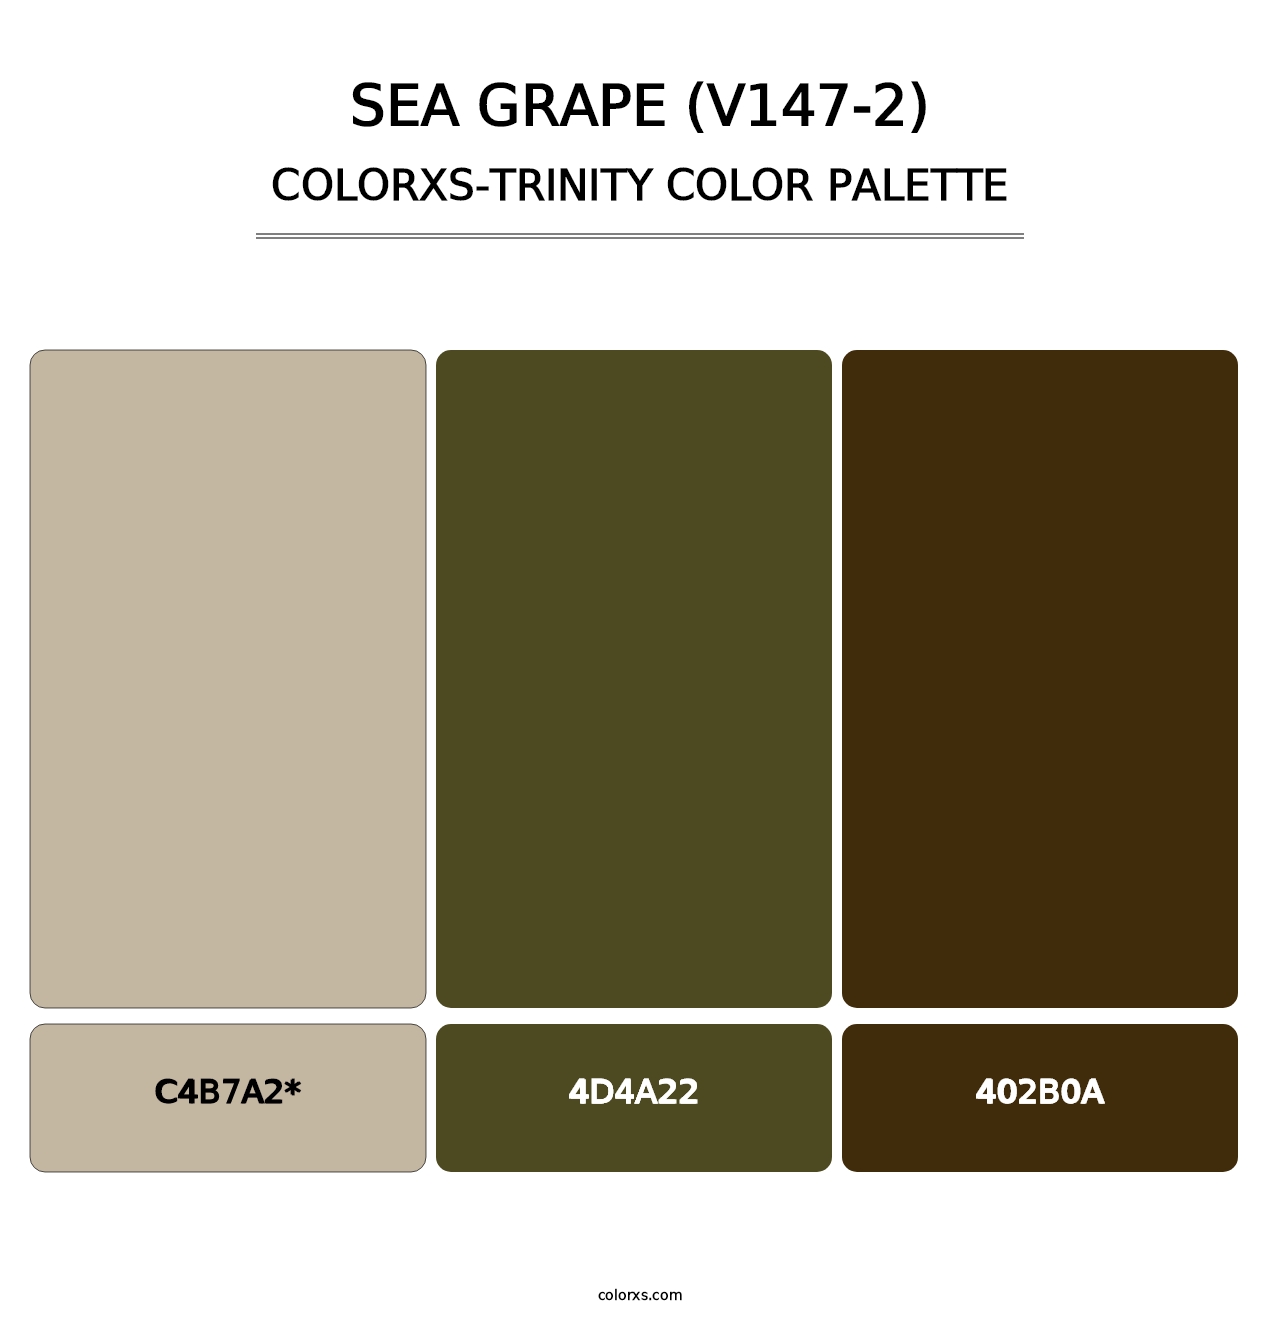 Sea Grape (V147-2) - Colorxs Trinity Palette